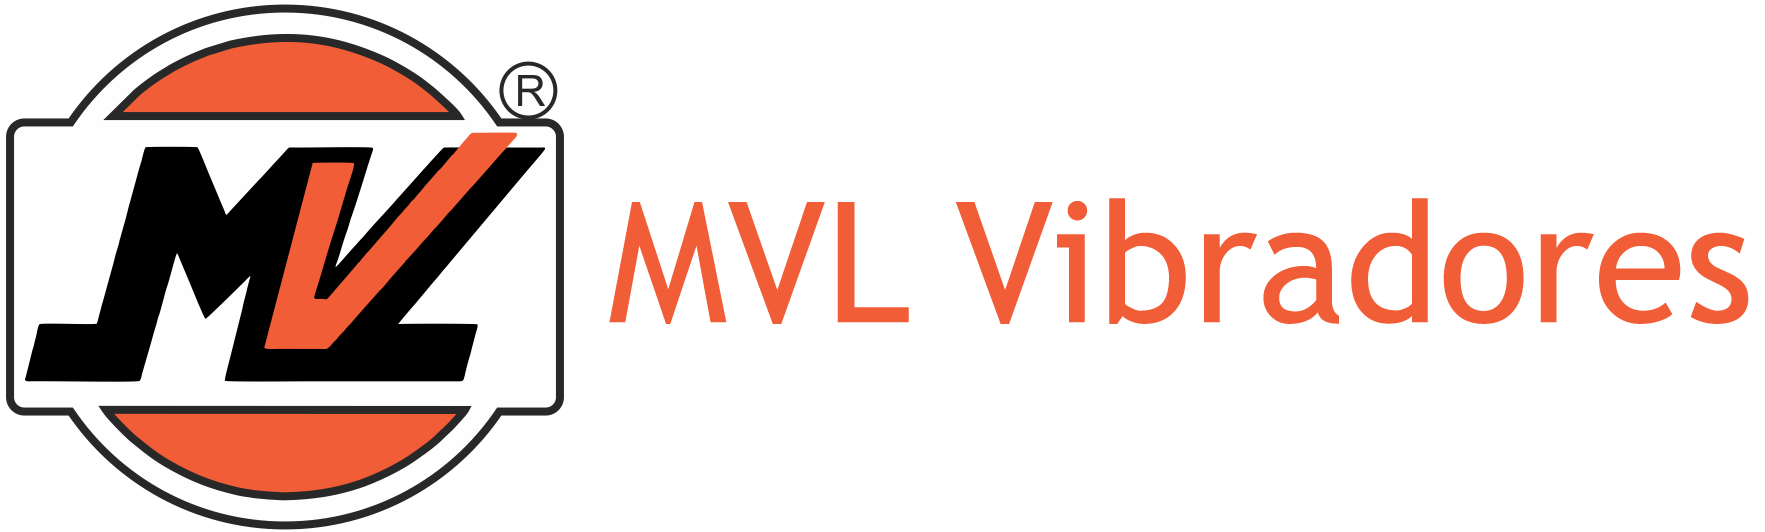 Localização - MVL Vibradores